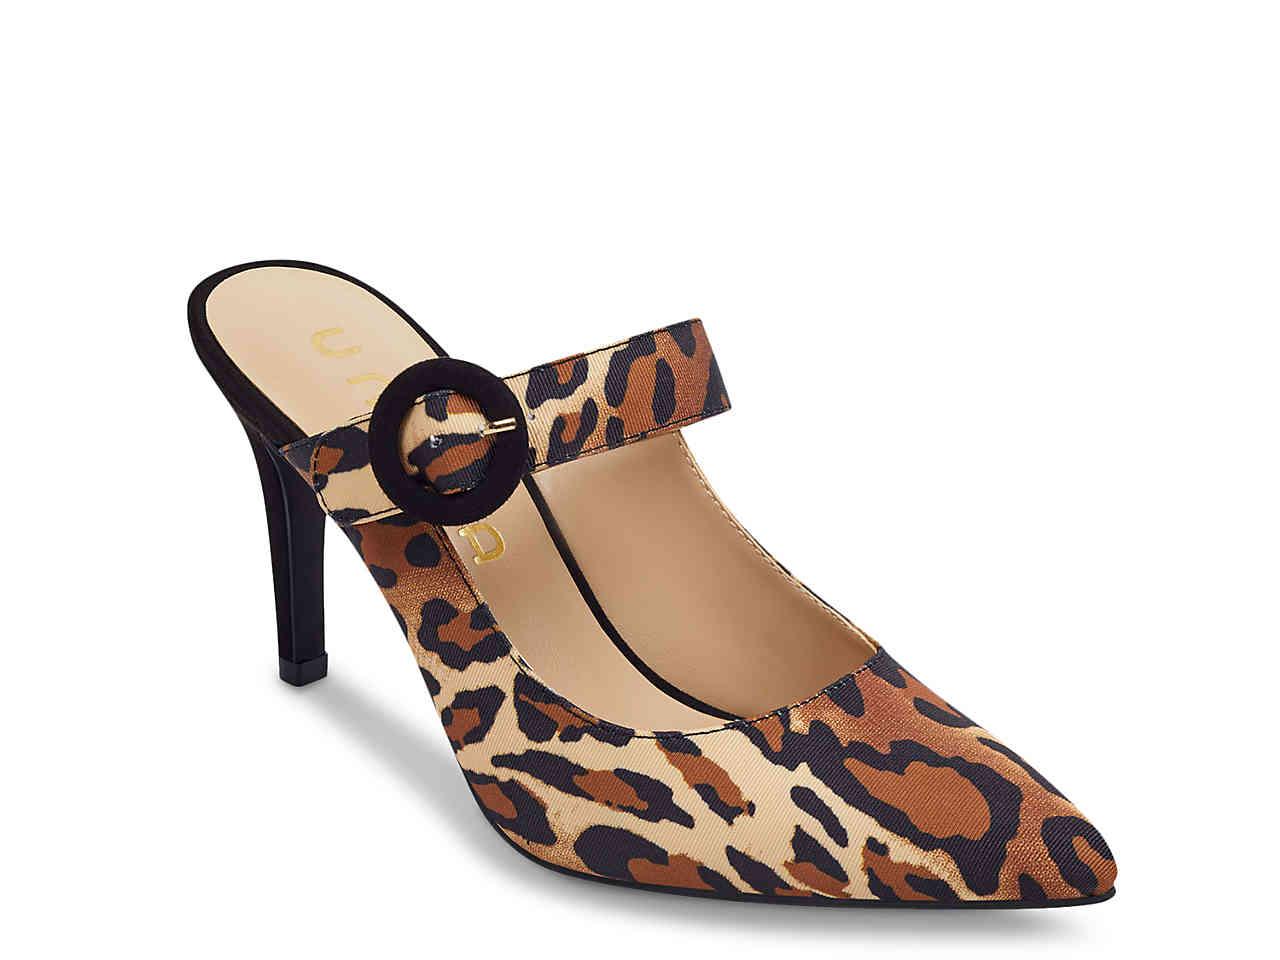 unisa leopard shoes